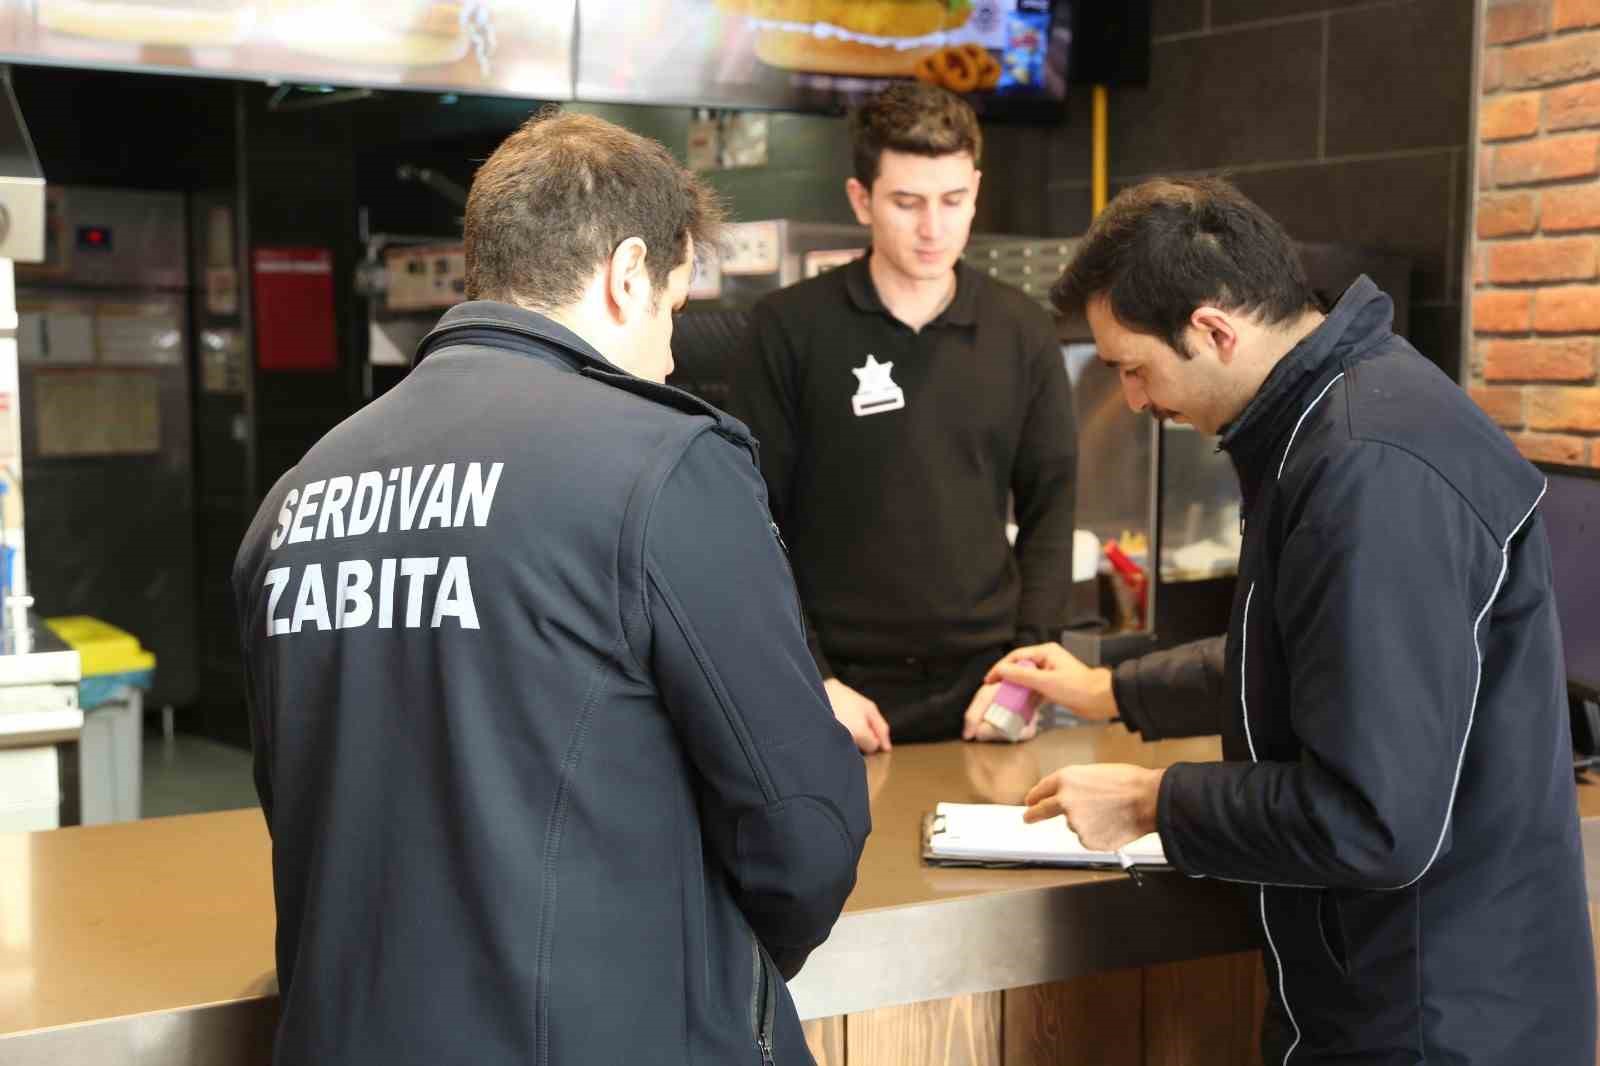 Serdivan’daki kafe ve restoranlarda fiyat denetimleri yapılıyor